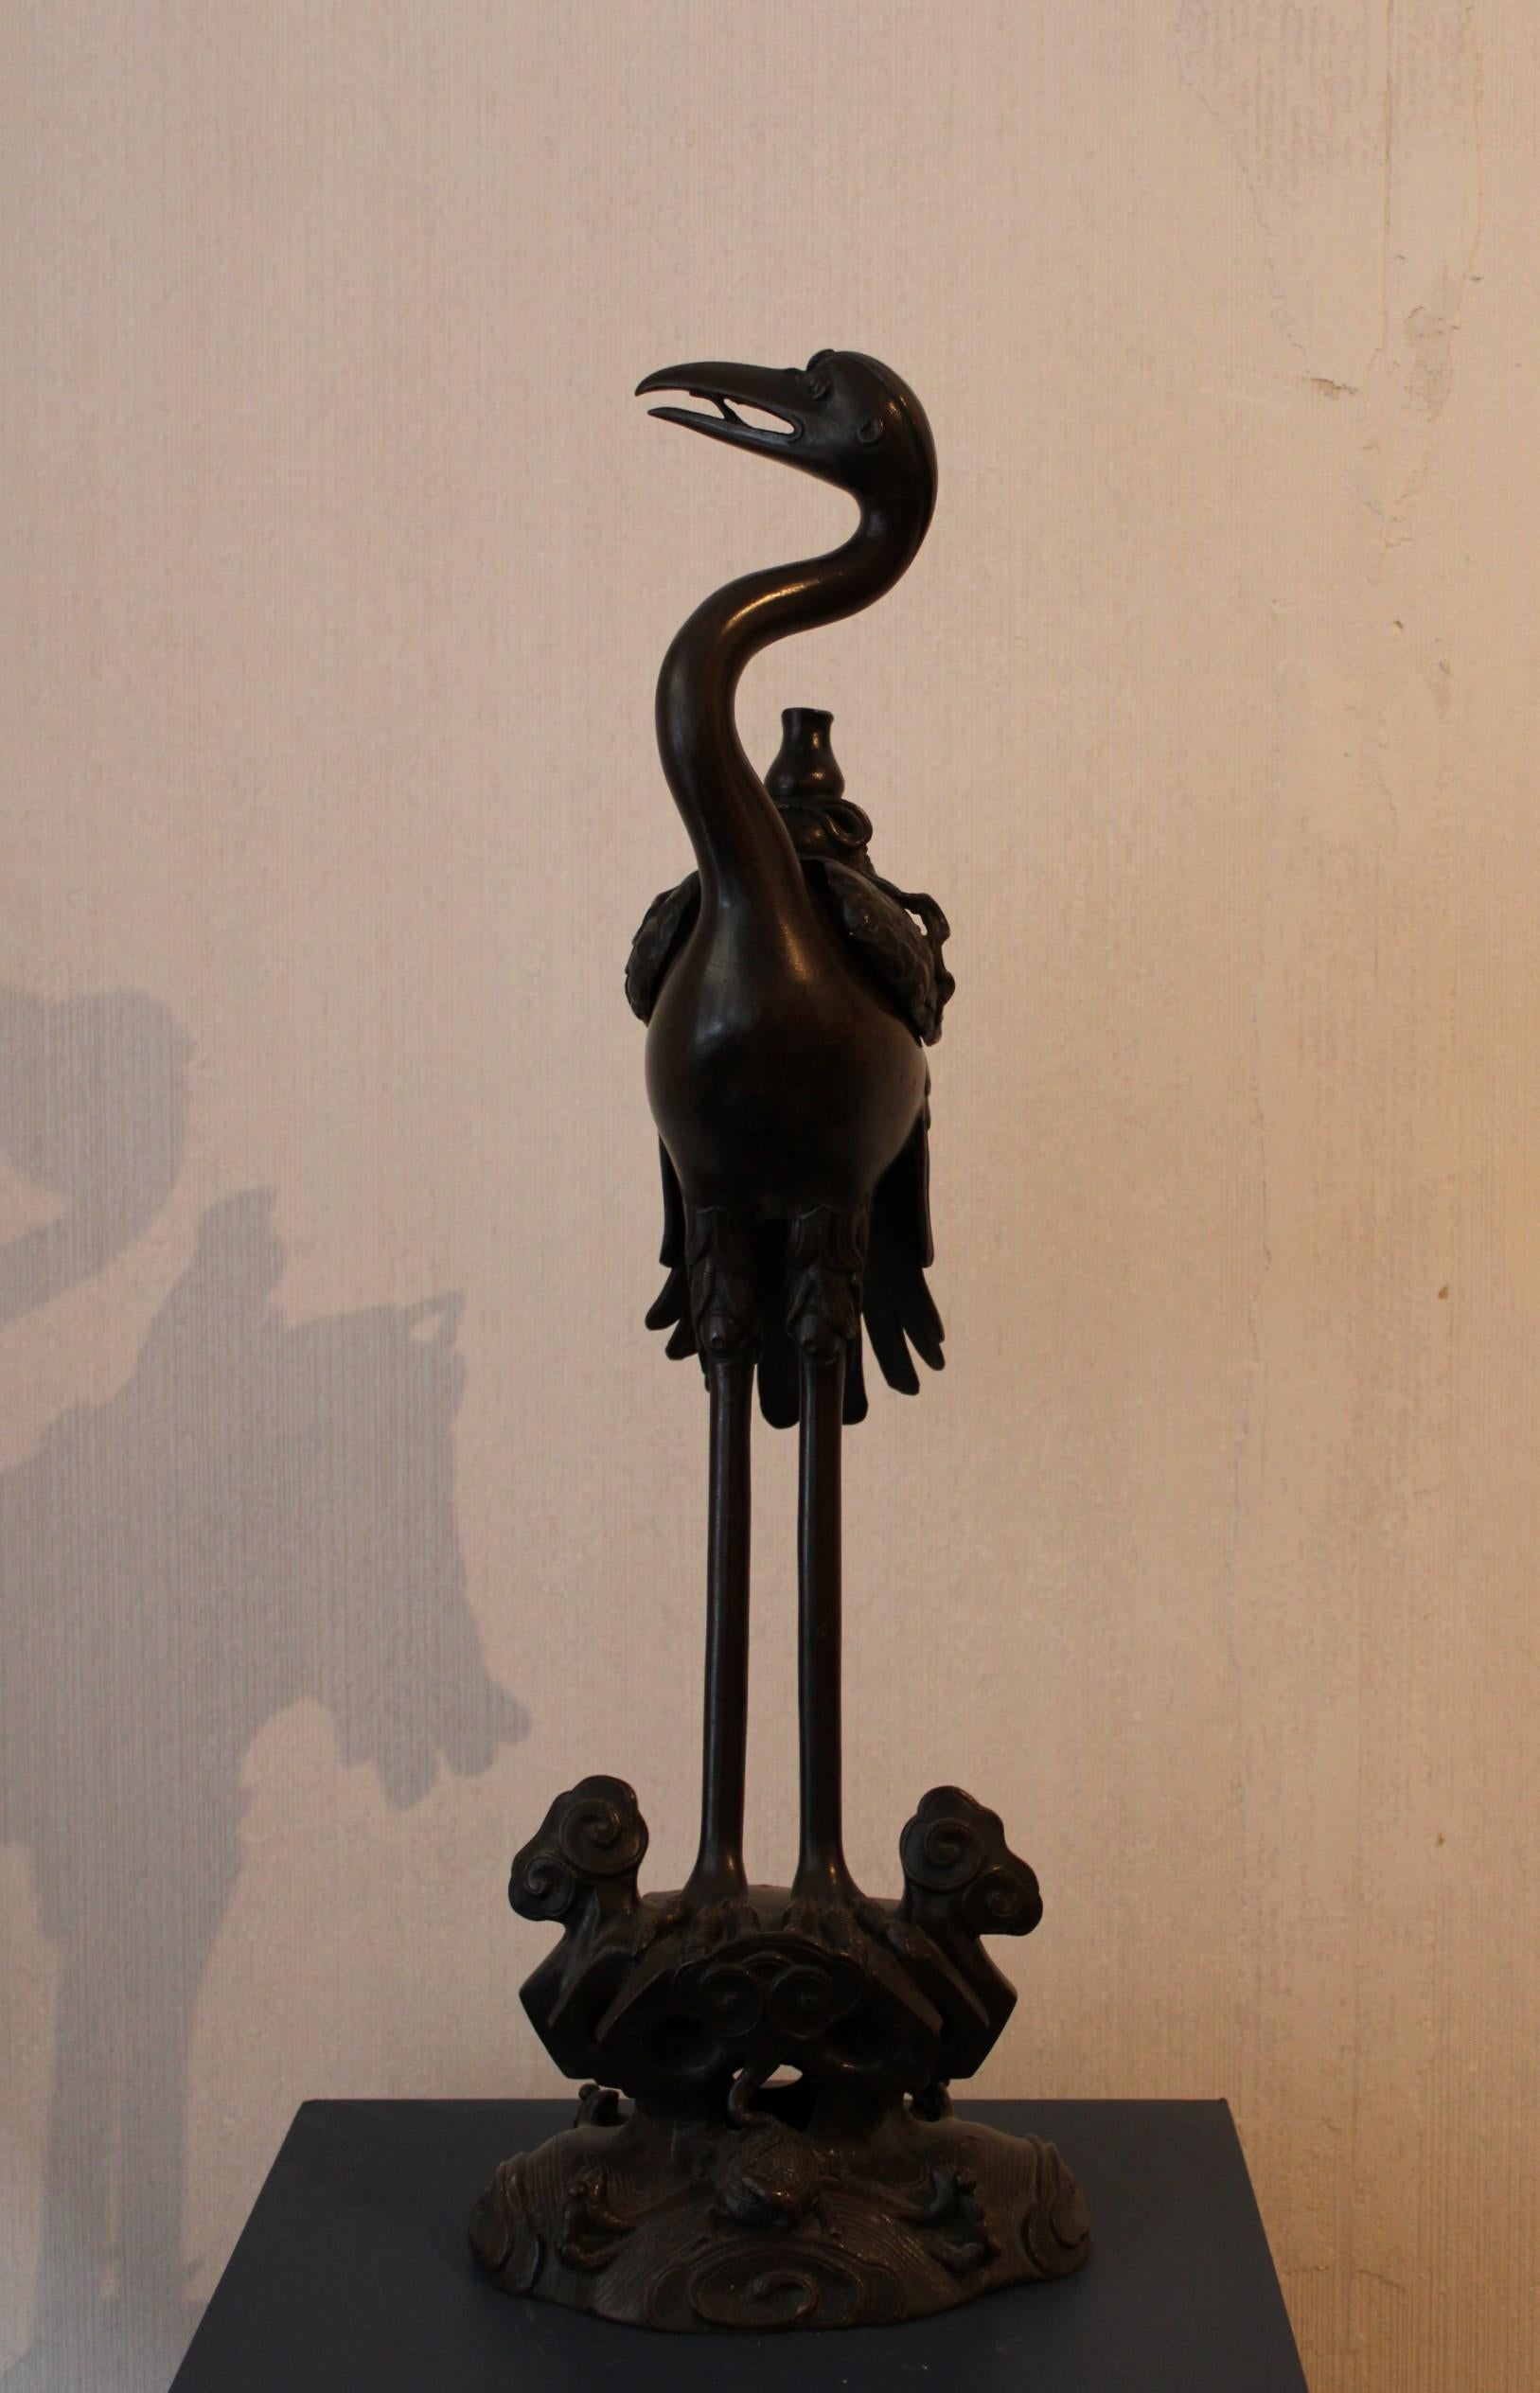 Brûle-encens oiseau en bronze.
Chine, 19ème siècle.